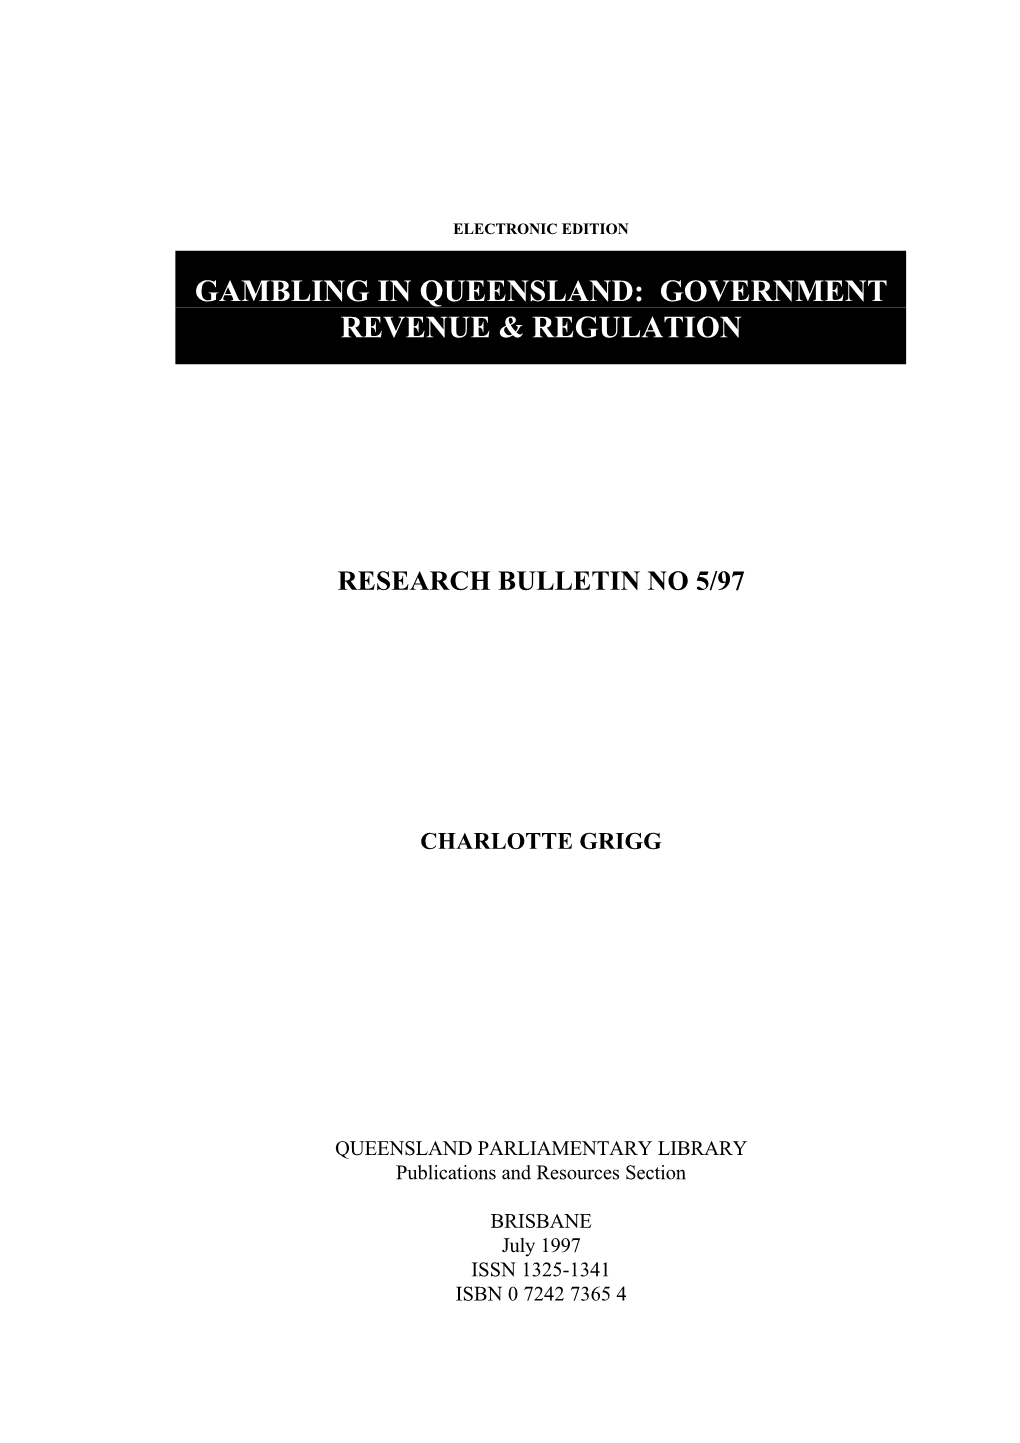 Gambling in Queensland: Government Revenue & Regulation